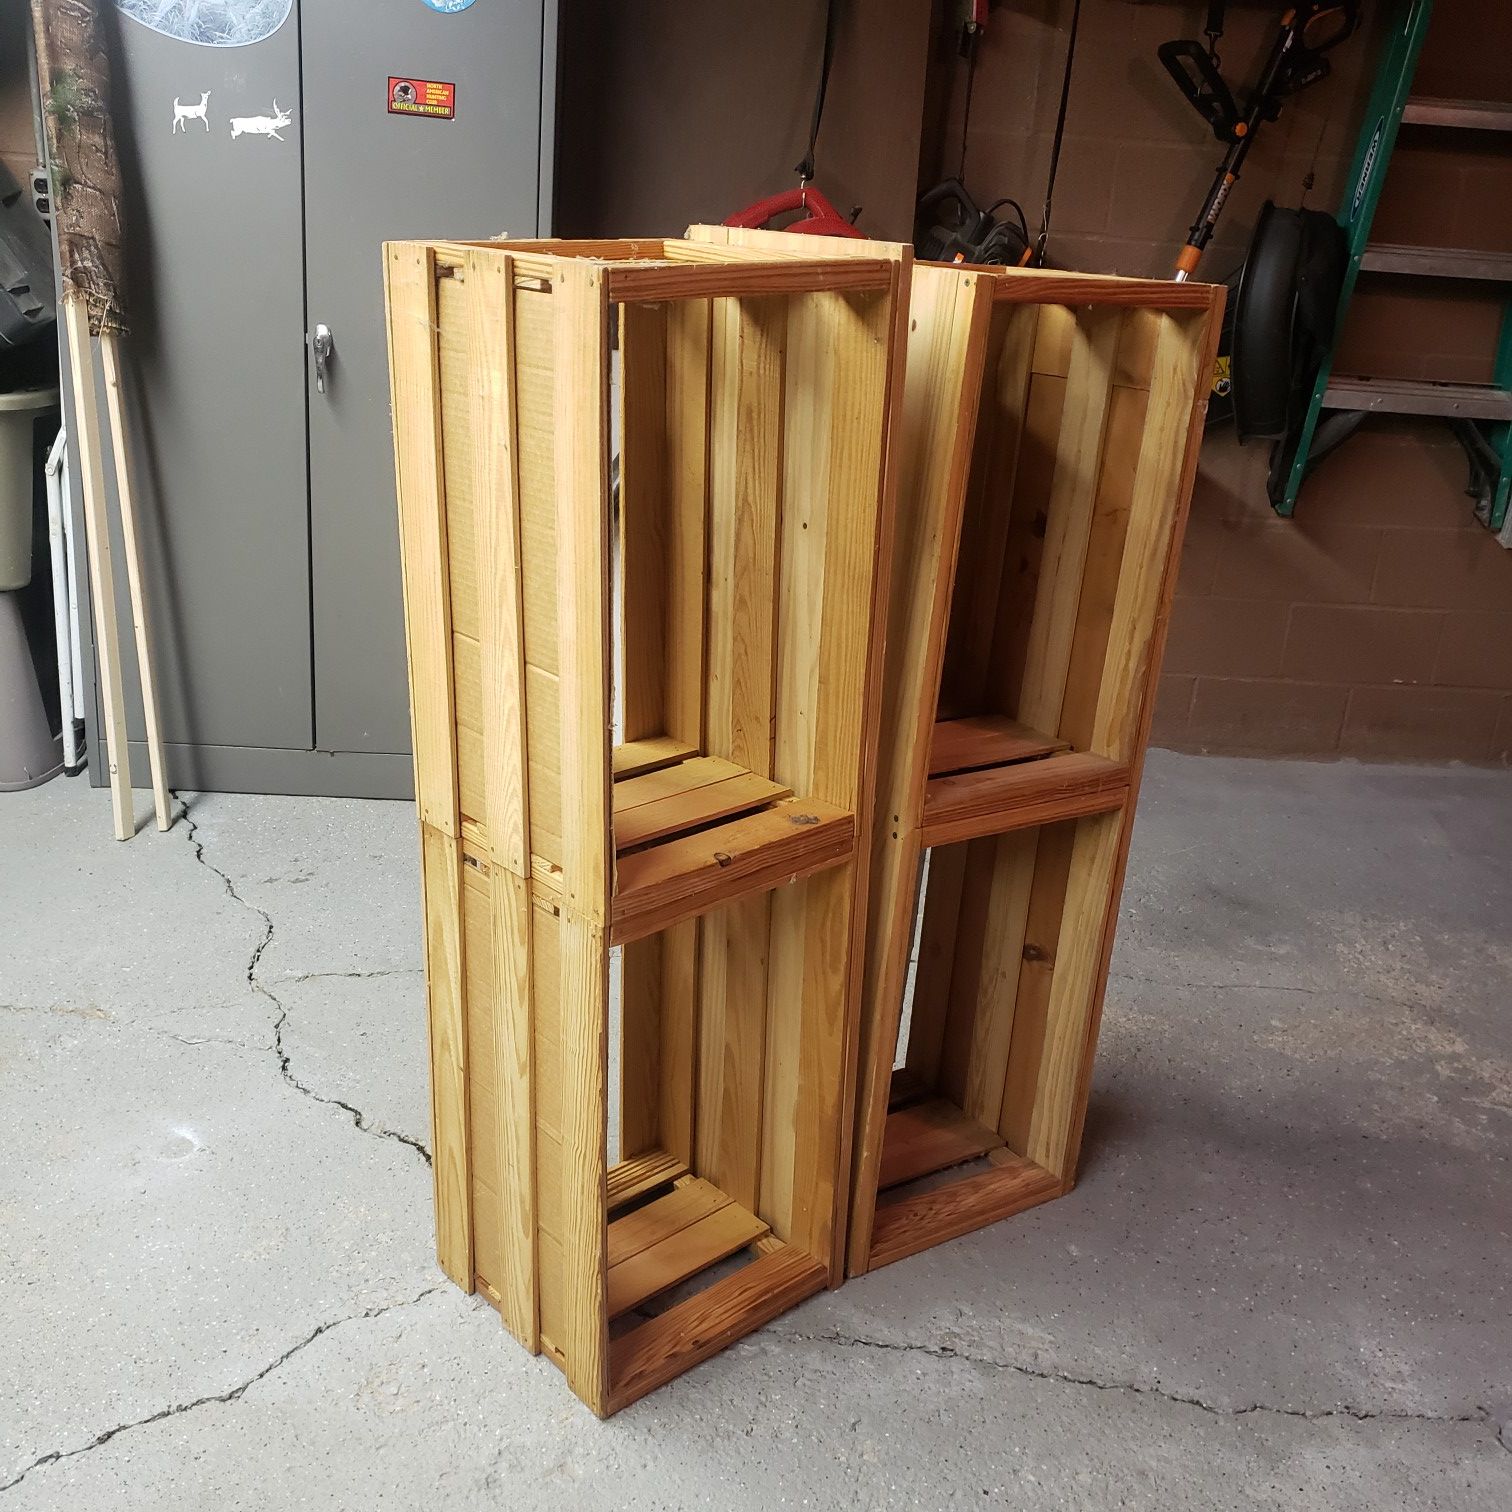 2 wooden crates huge